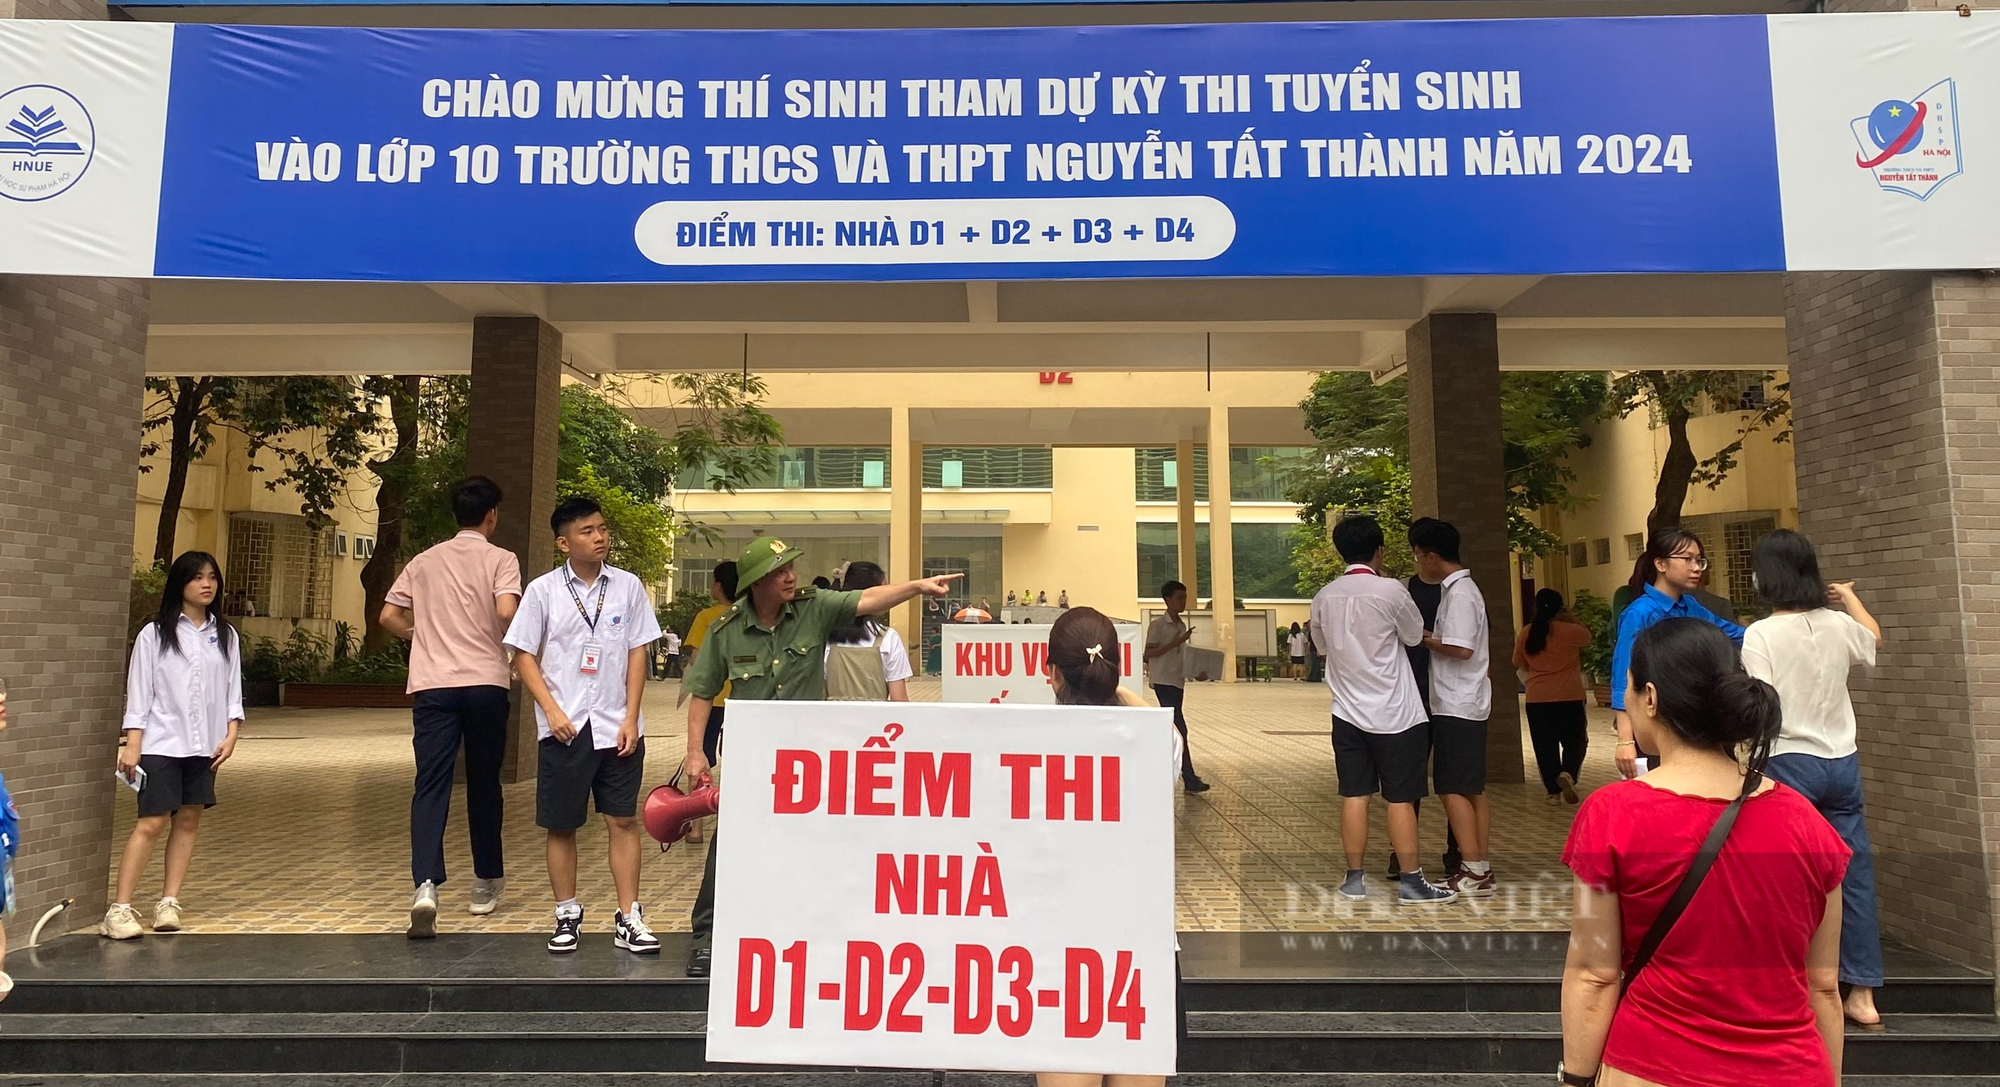 Trường cuối cùng ở Hà Nội tổ chức thi lớp 10: Tăng chỉ tiêu nhưng tỉ lệ chọi vẫn cao "chóng mặt"- Ảnh 1.